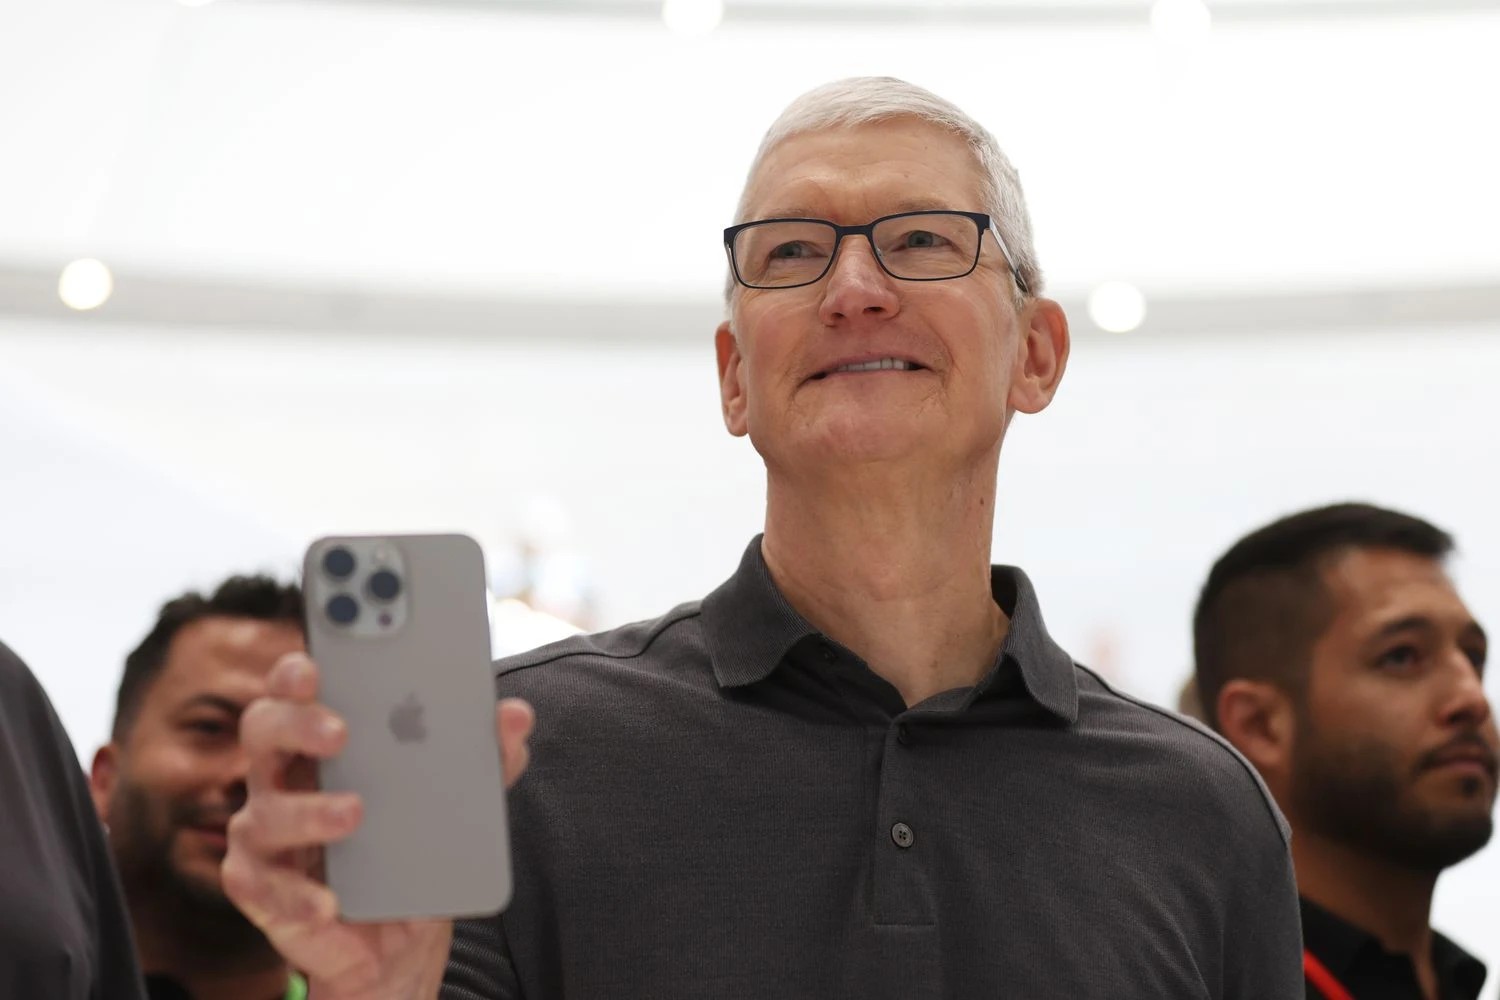 Tim Cook hiện đang giữ chức CEO của Tập đoàn Apple sau khi Steve Jobs rời ghế